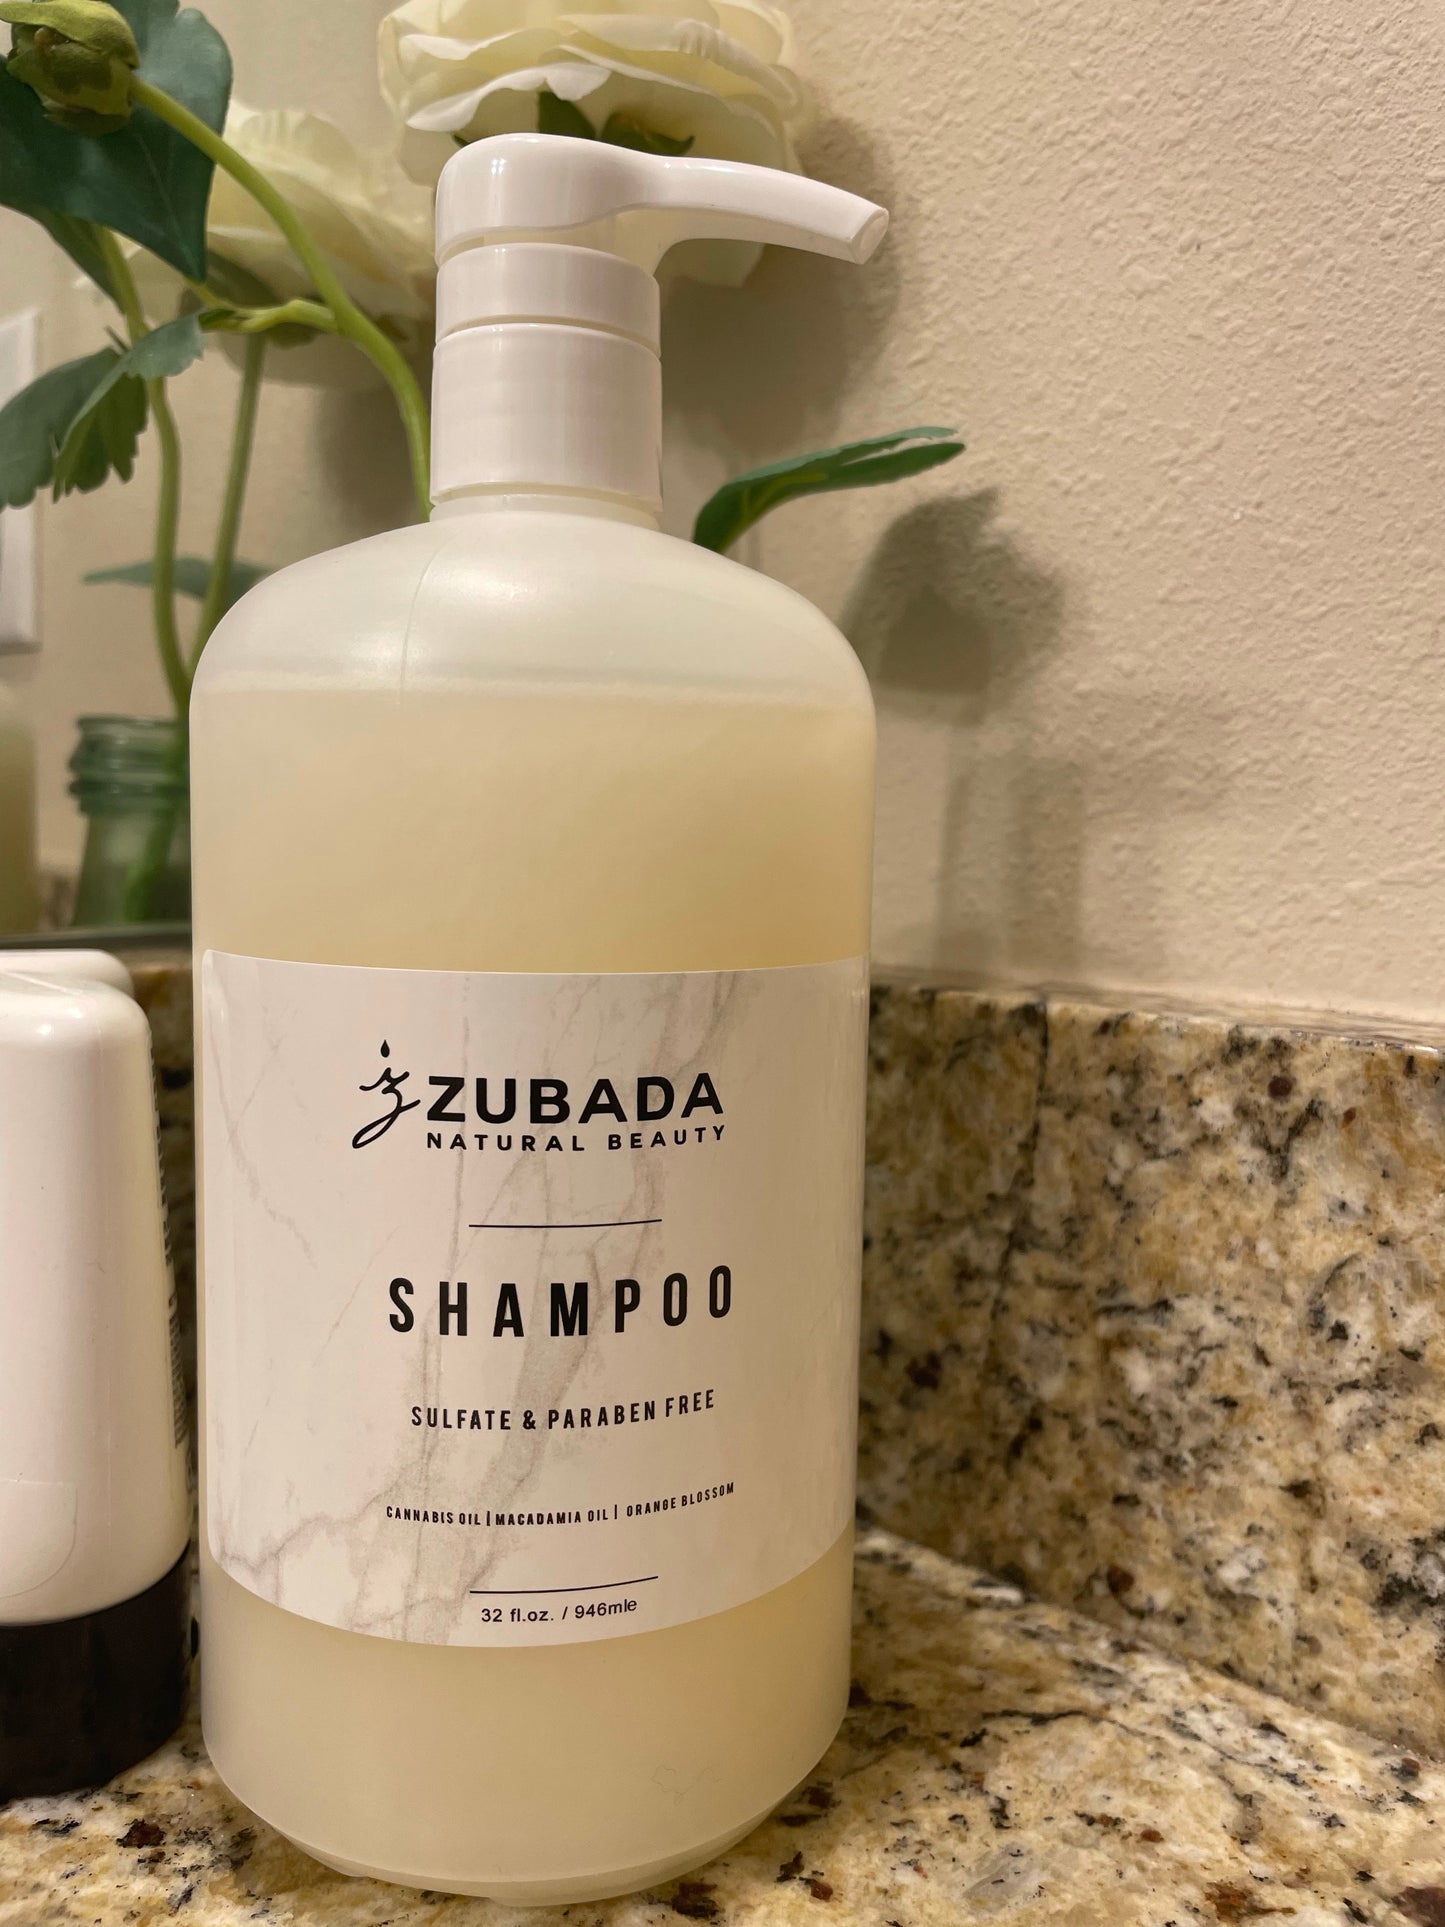 Zubada’s Orange Blossom & Aloe Shampoo 8oz